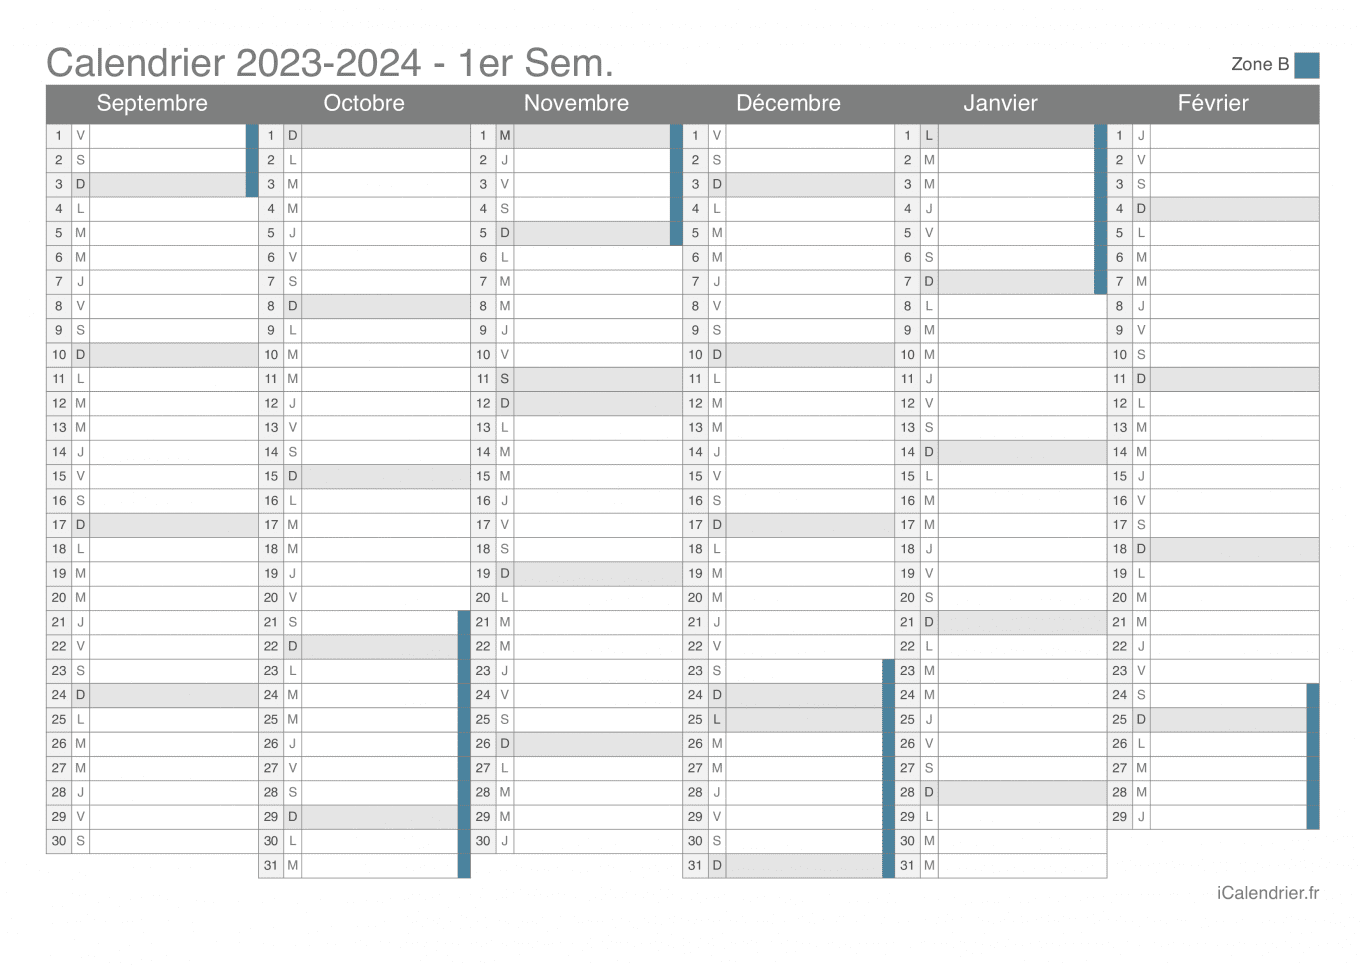 Calendrier des vacances scolaires 2023-2024 par semestre de la zone B